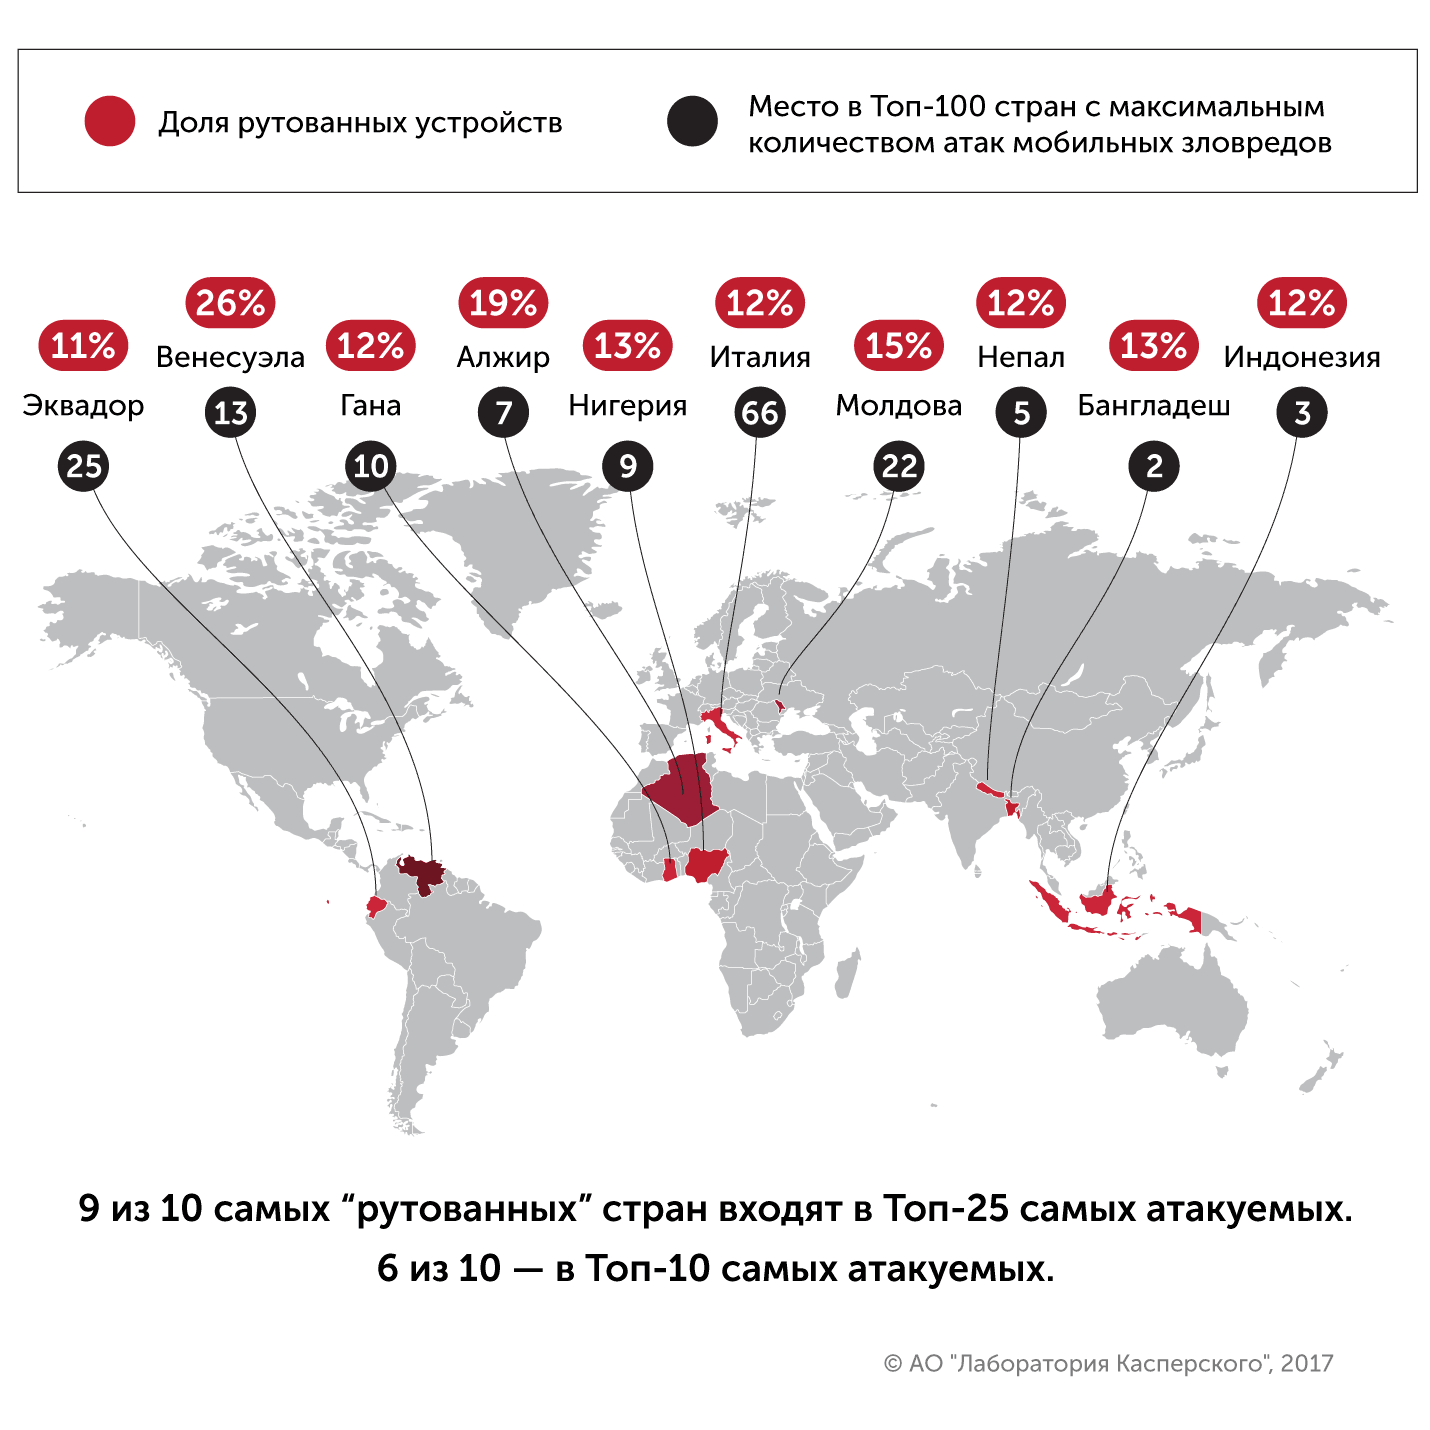 А 9 з 10 найбільш «рутованних» країн входять в топ-25 найбільш атакованих